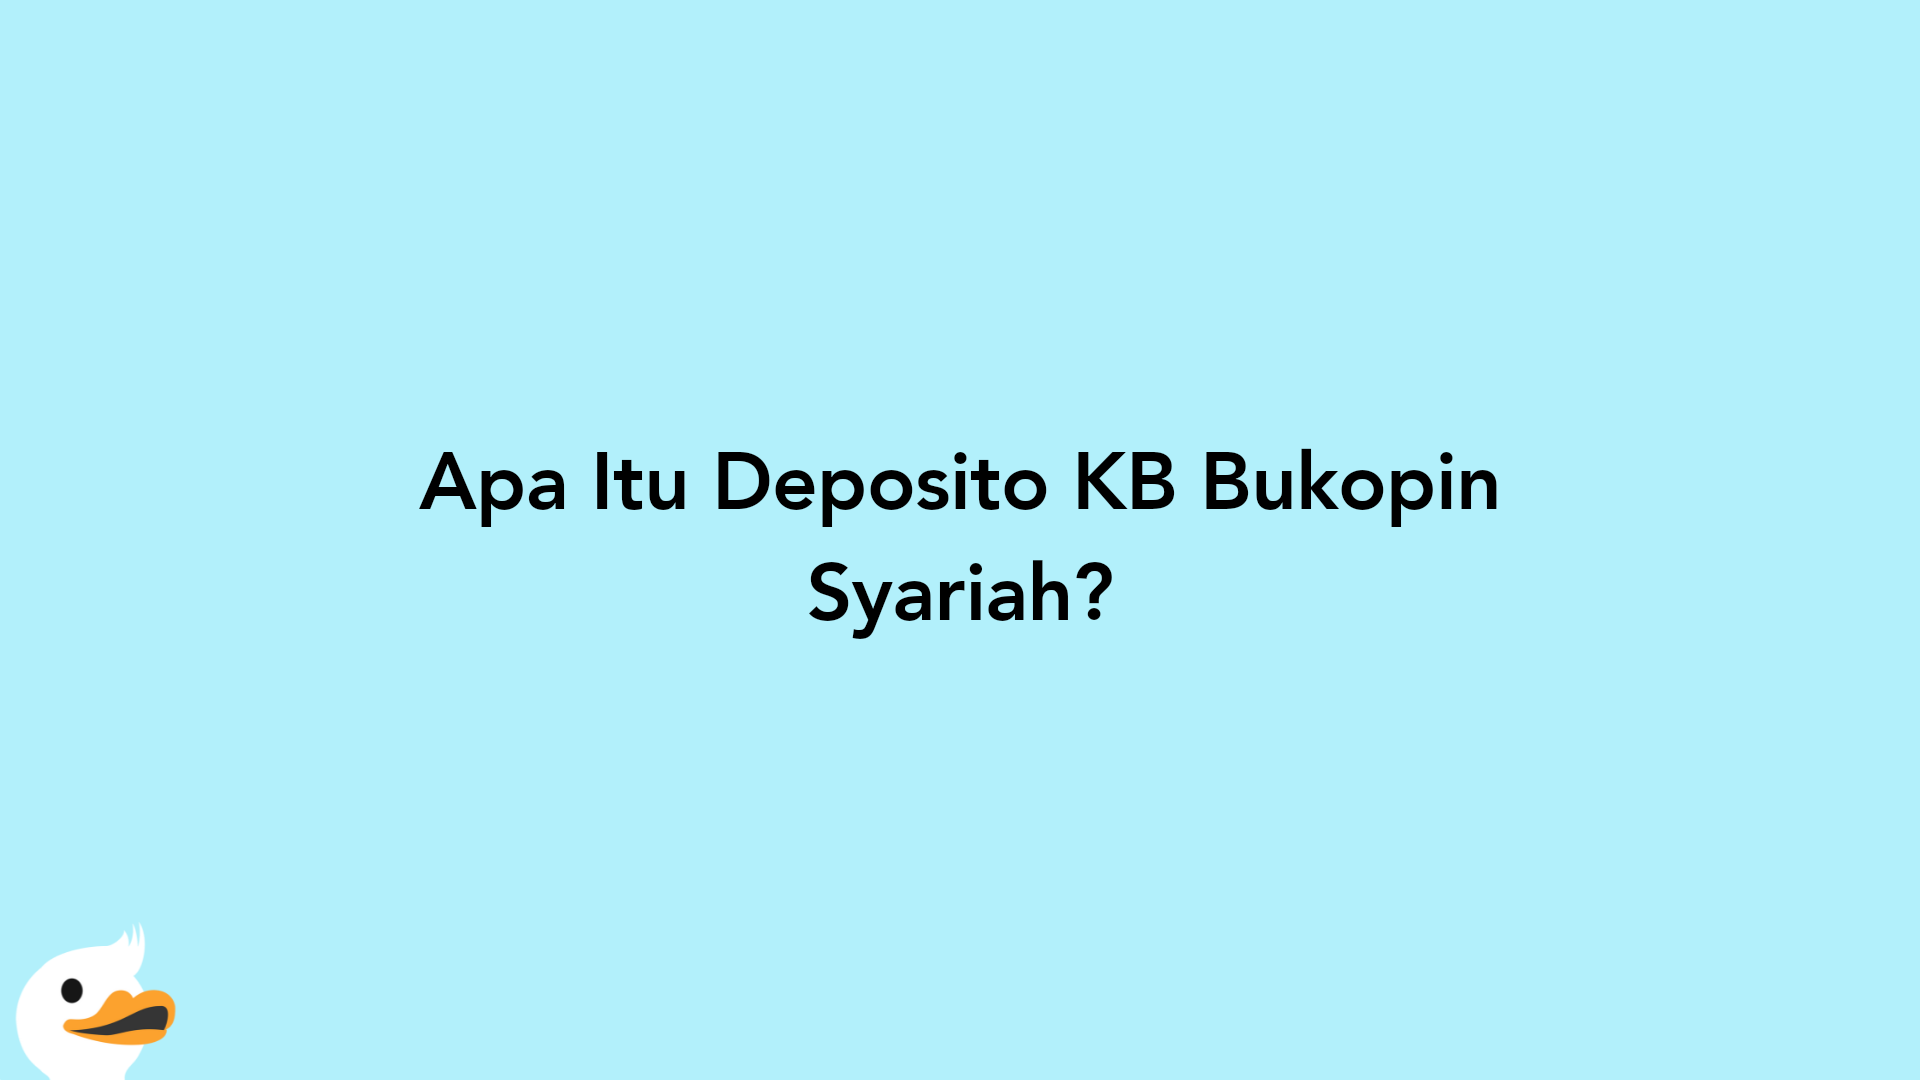 Apa Itu Deposito KB Bukopin Syariah?